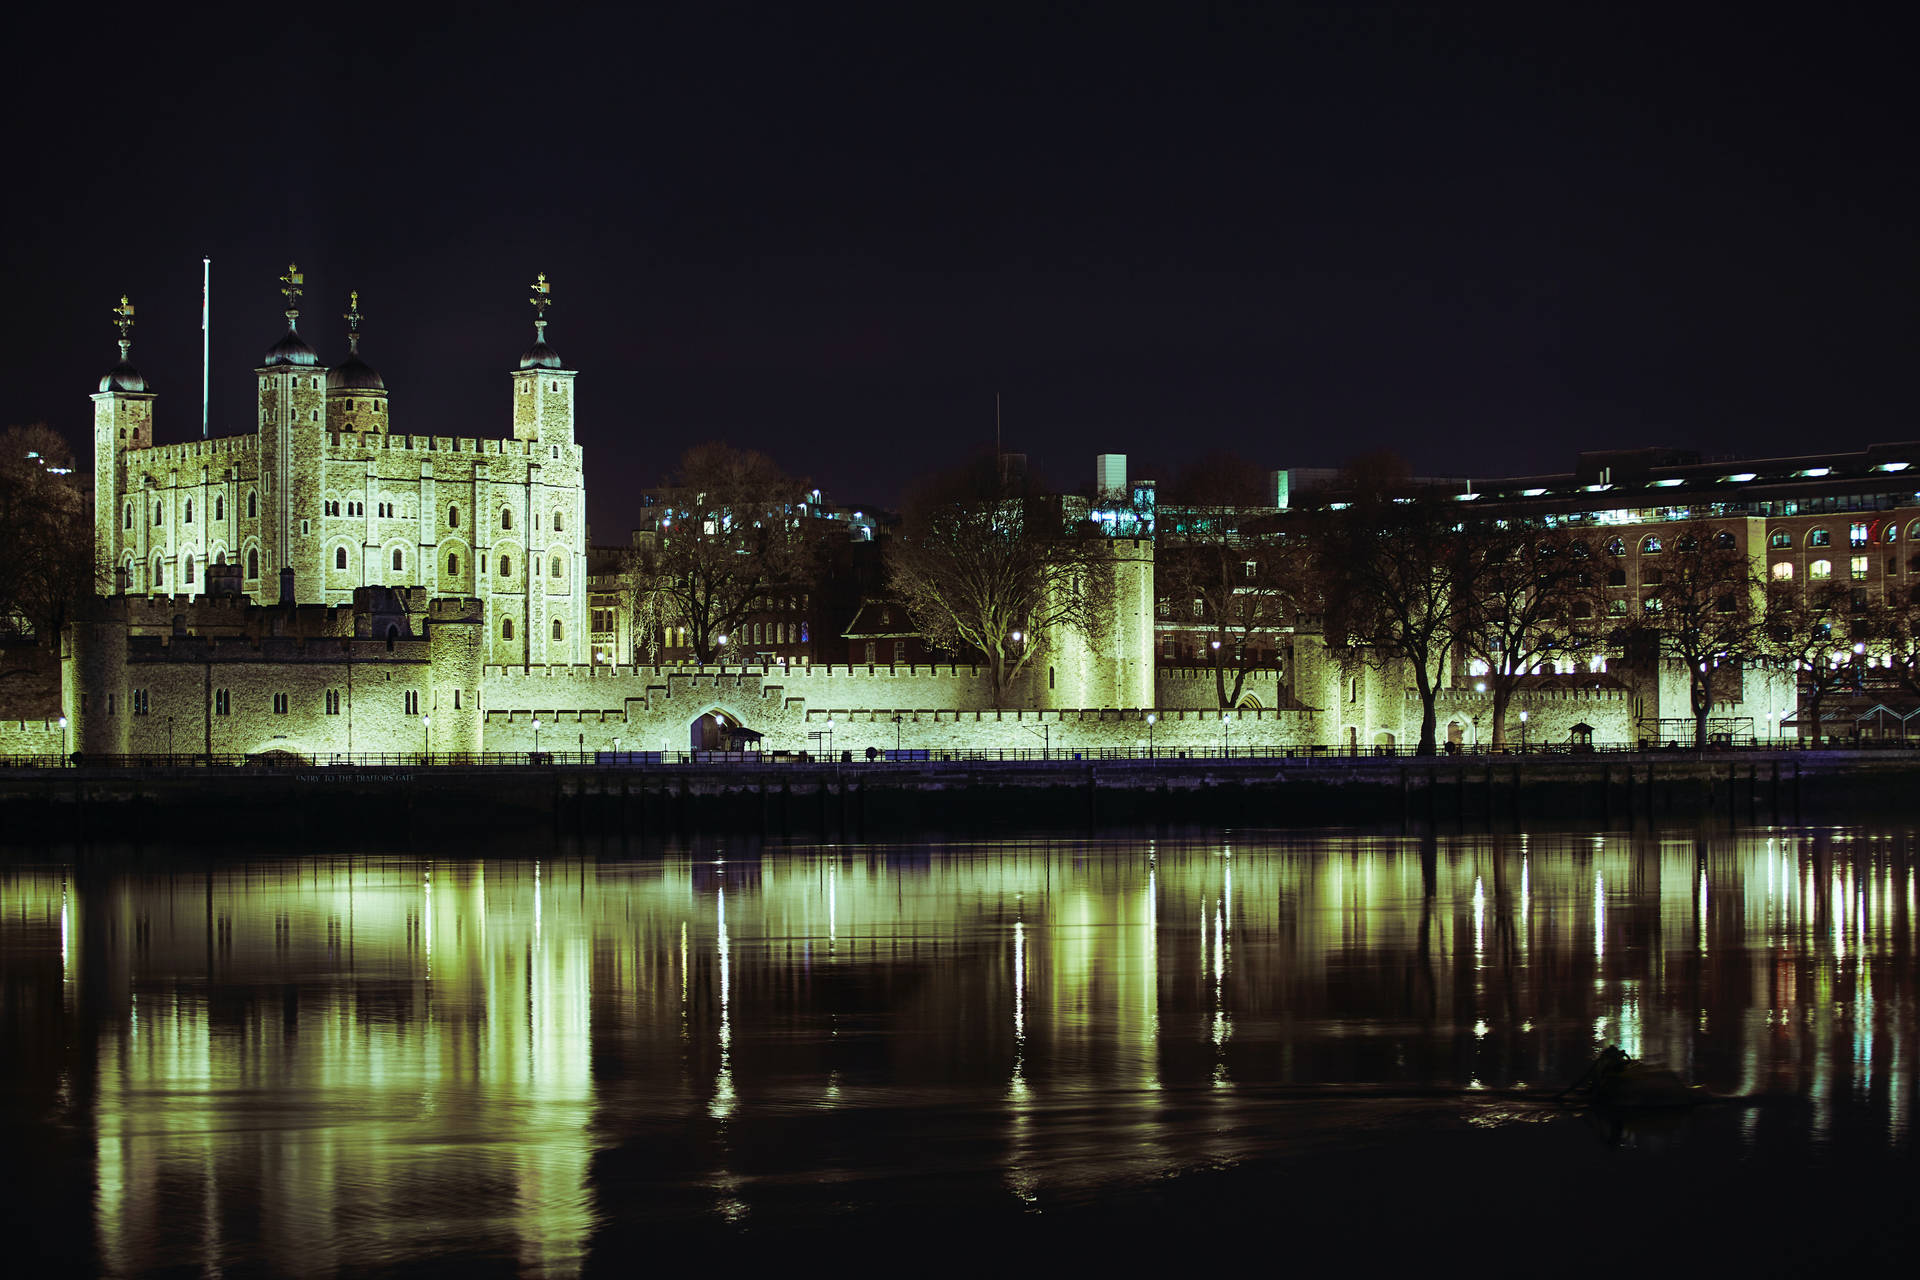 Towerof London, Fluss Thames, Bei Nacht. Wallpaper